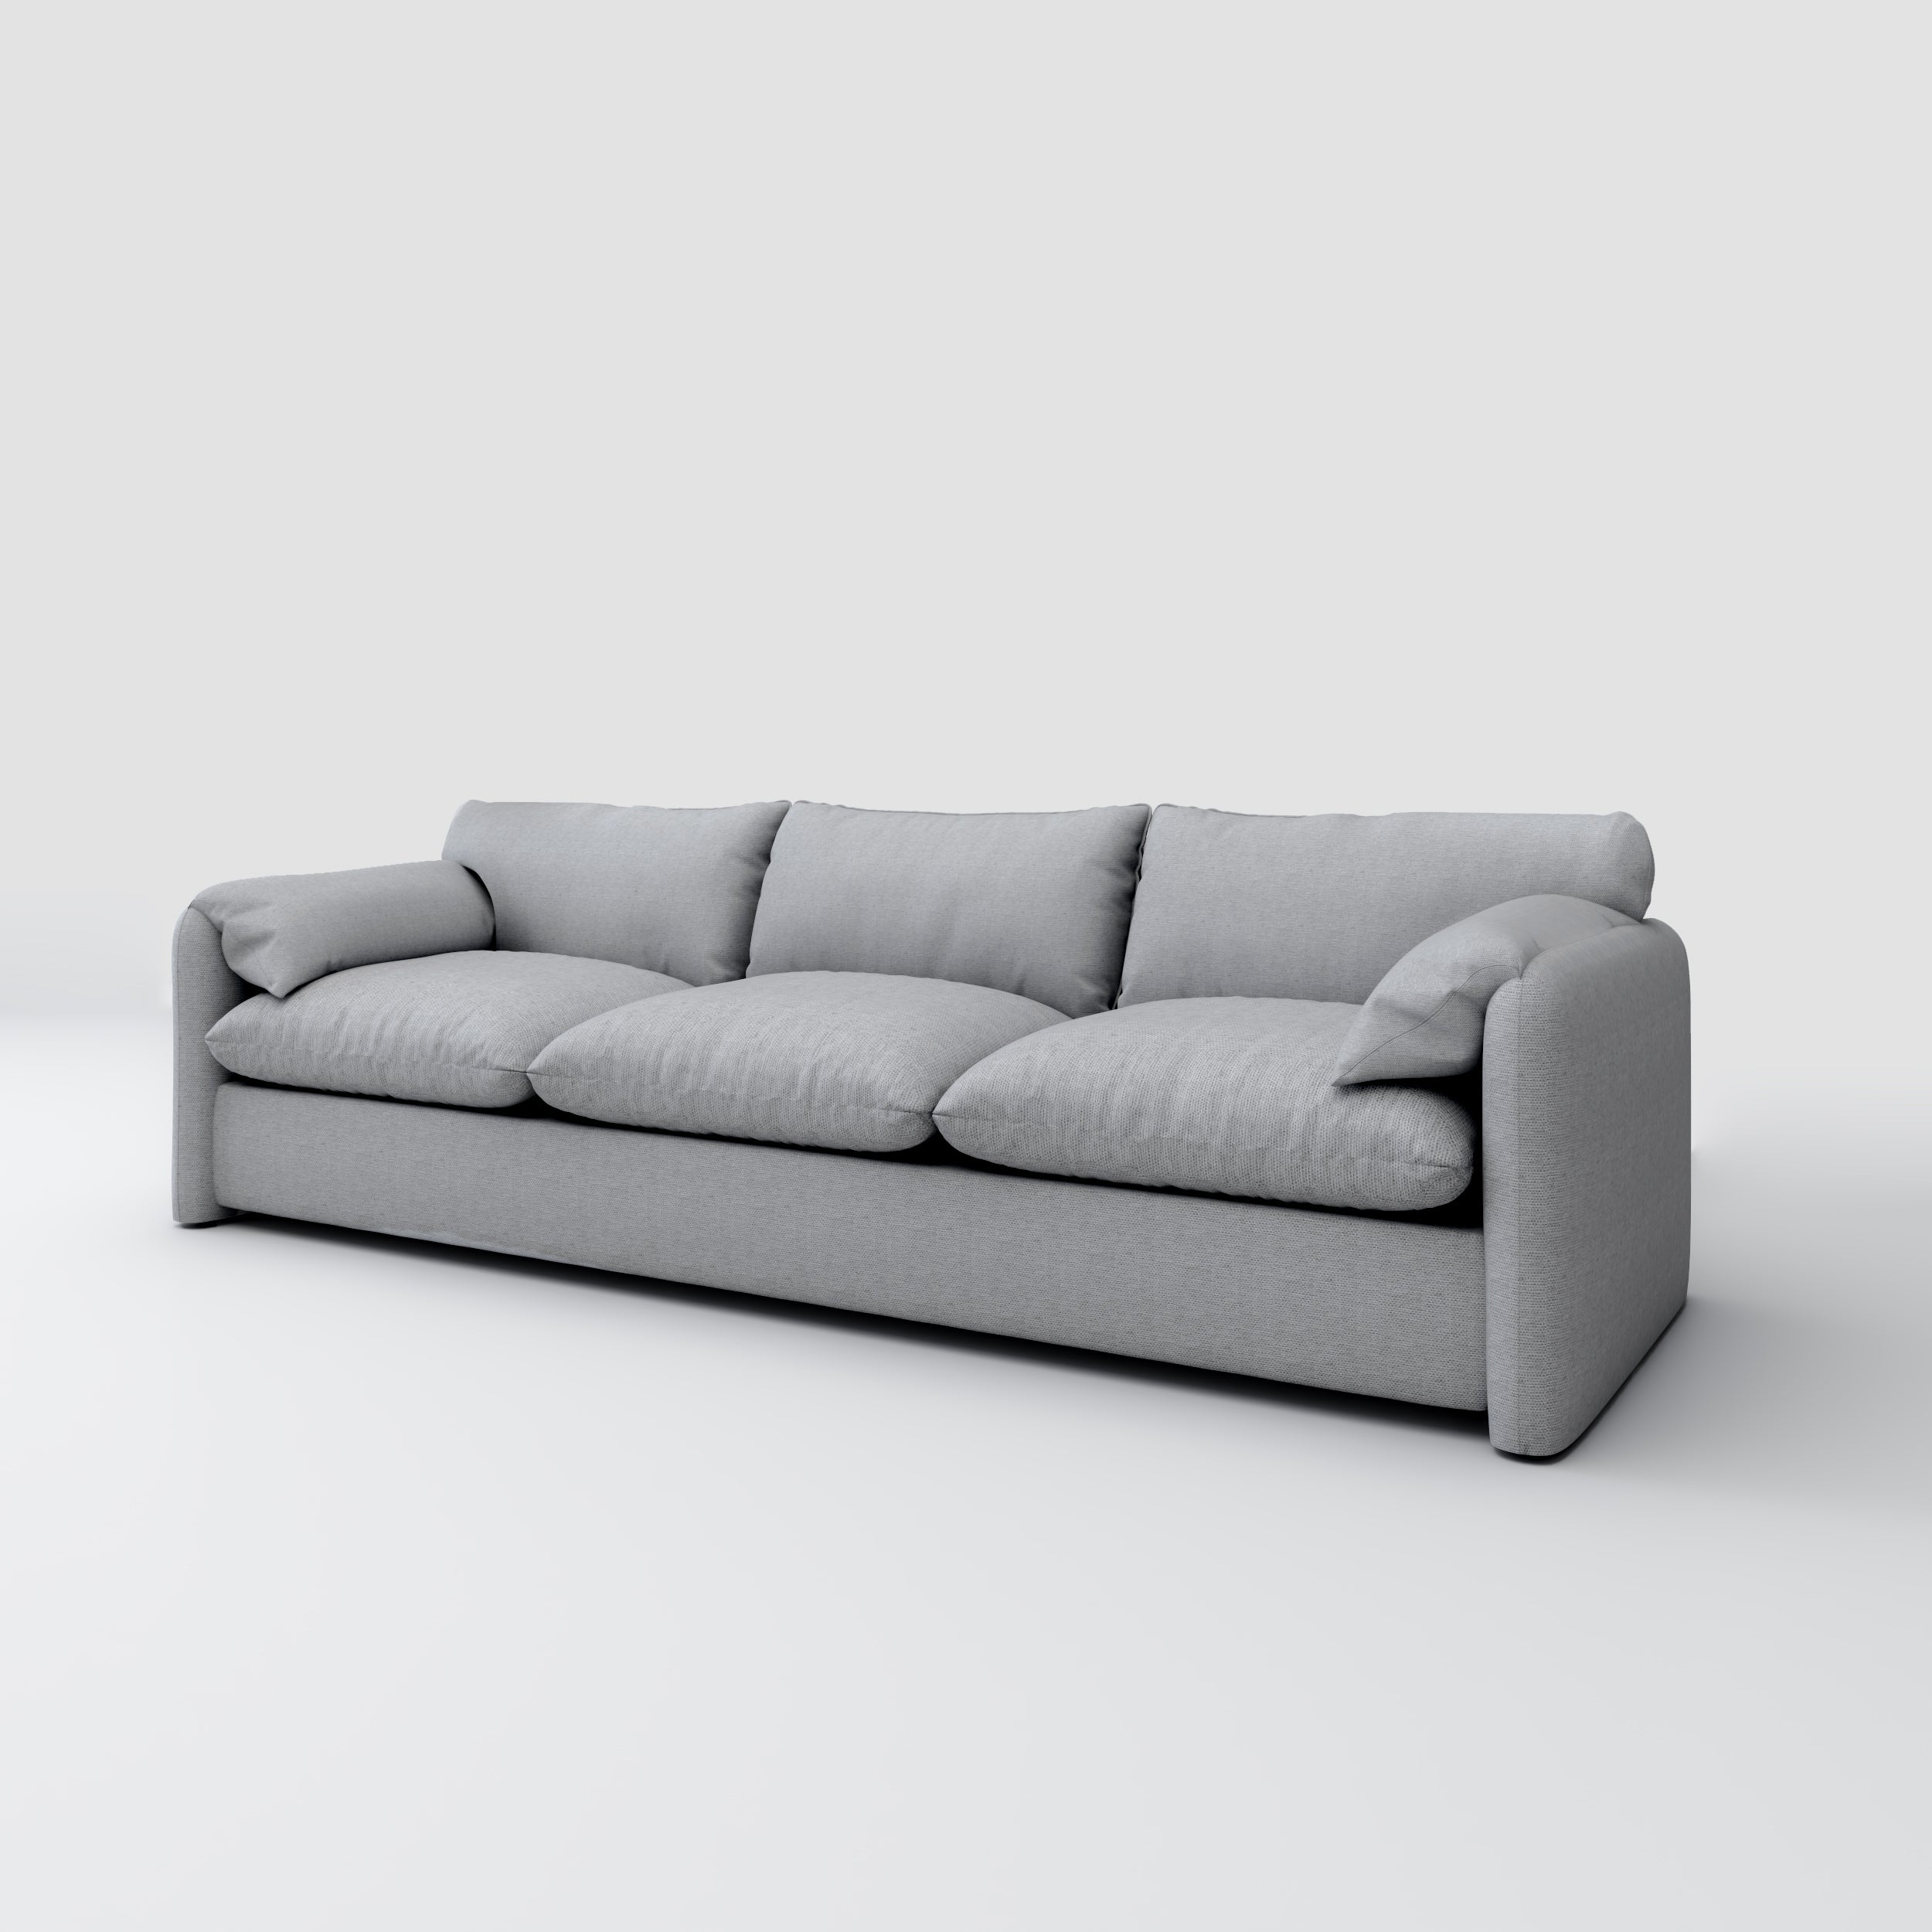 Ash 3 Seater Sofa